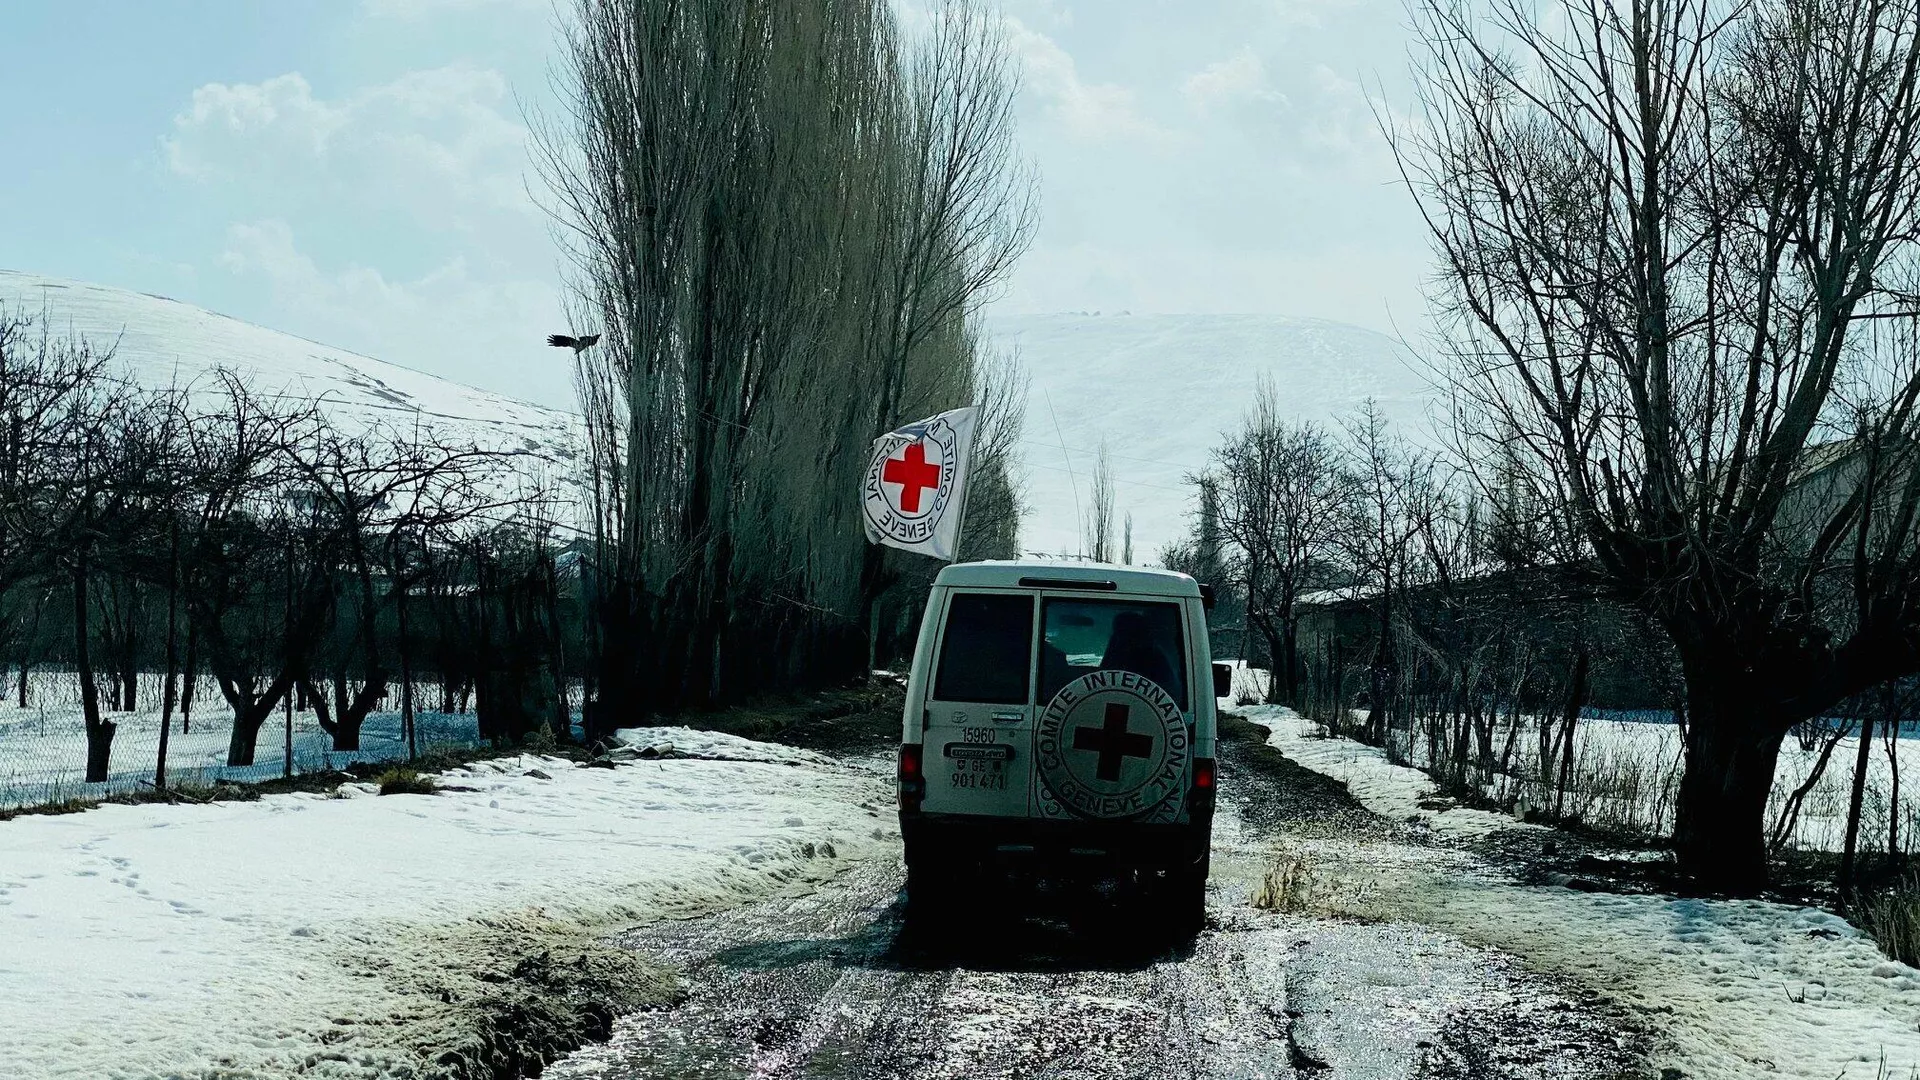 Կարմիր խաչի միջնորդությամբ 11 քաղաքացի Հայաստանից տեղափոխվել է Արցախ